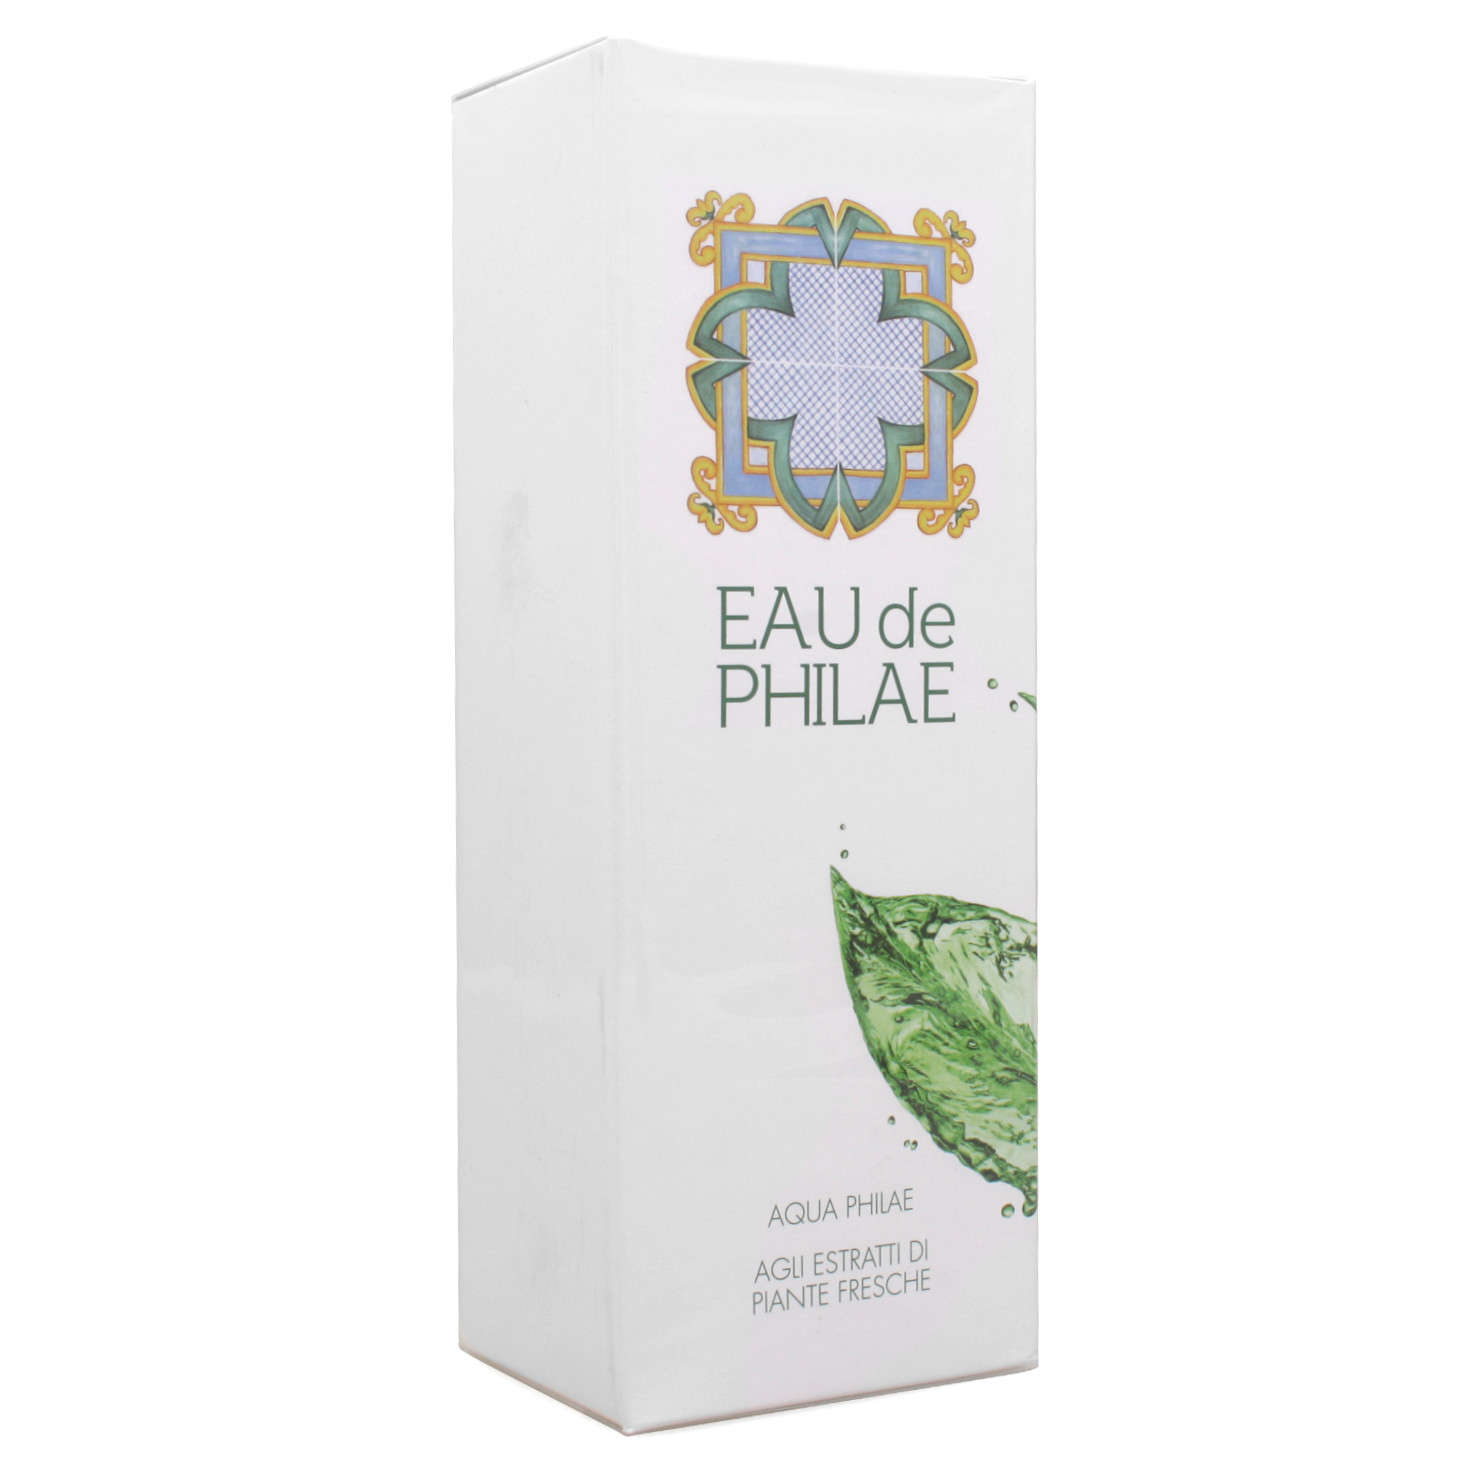 Eau de Philae - Acqua agli estratti di piante fresche